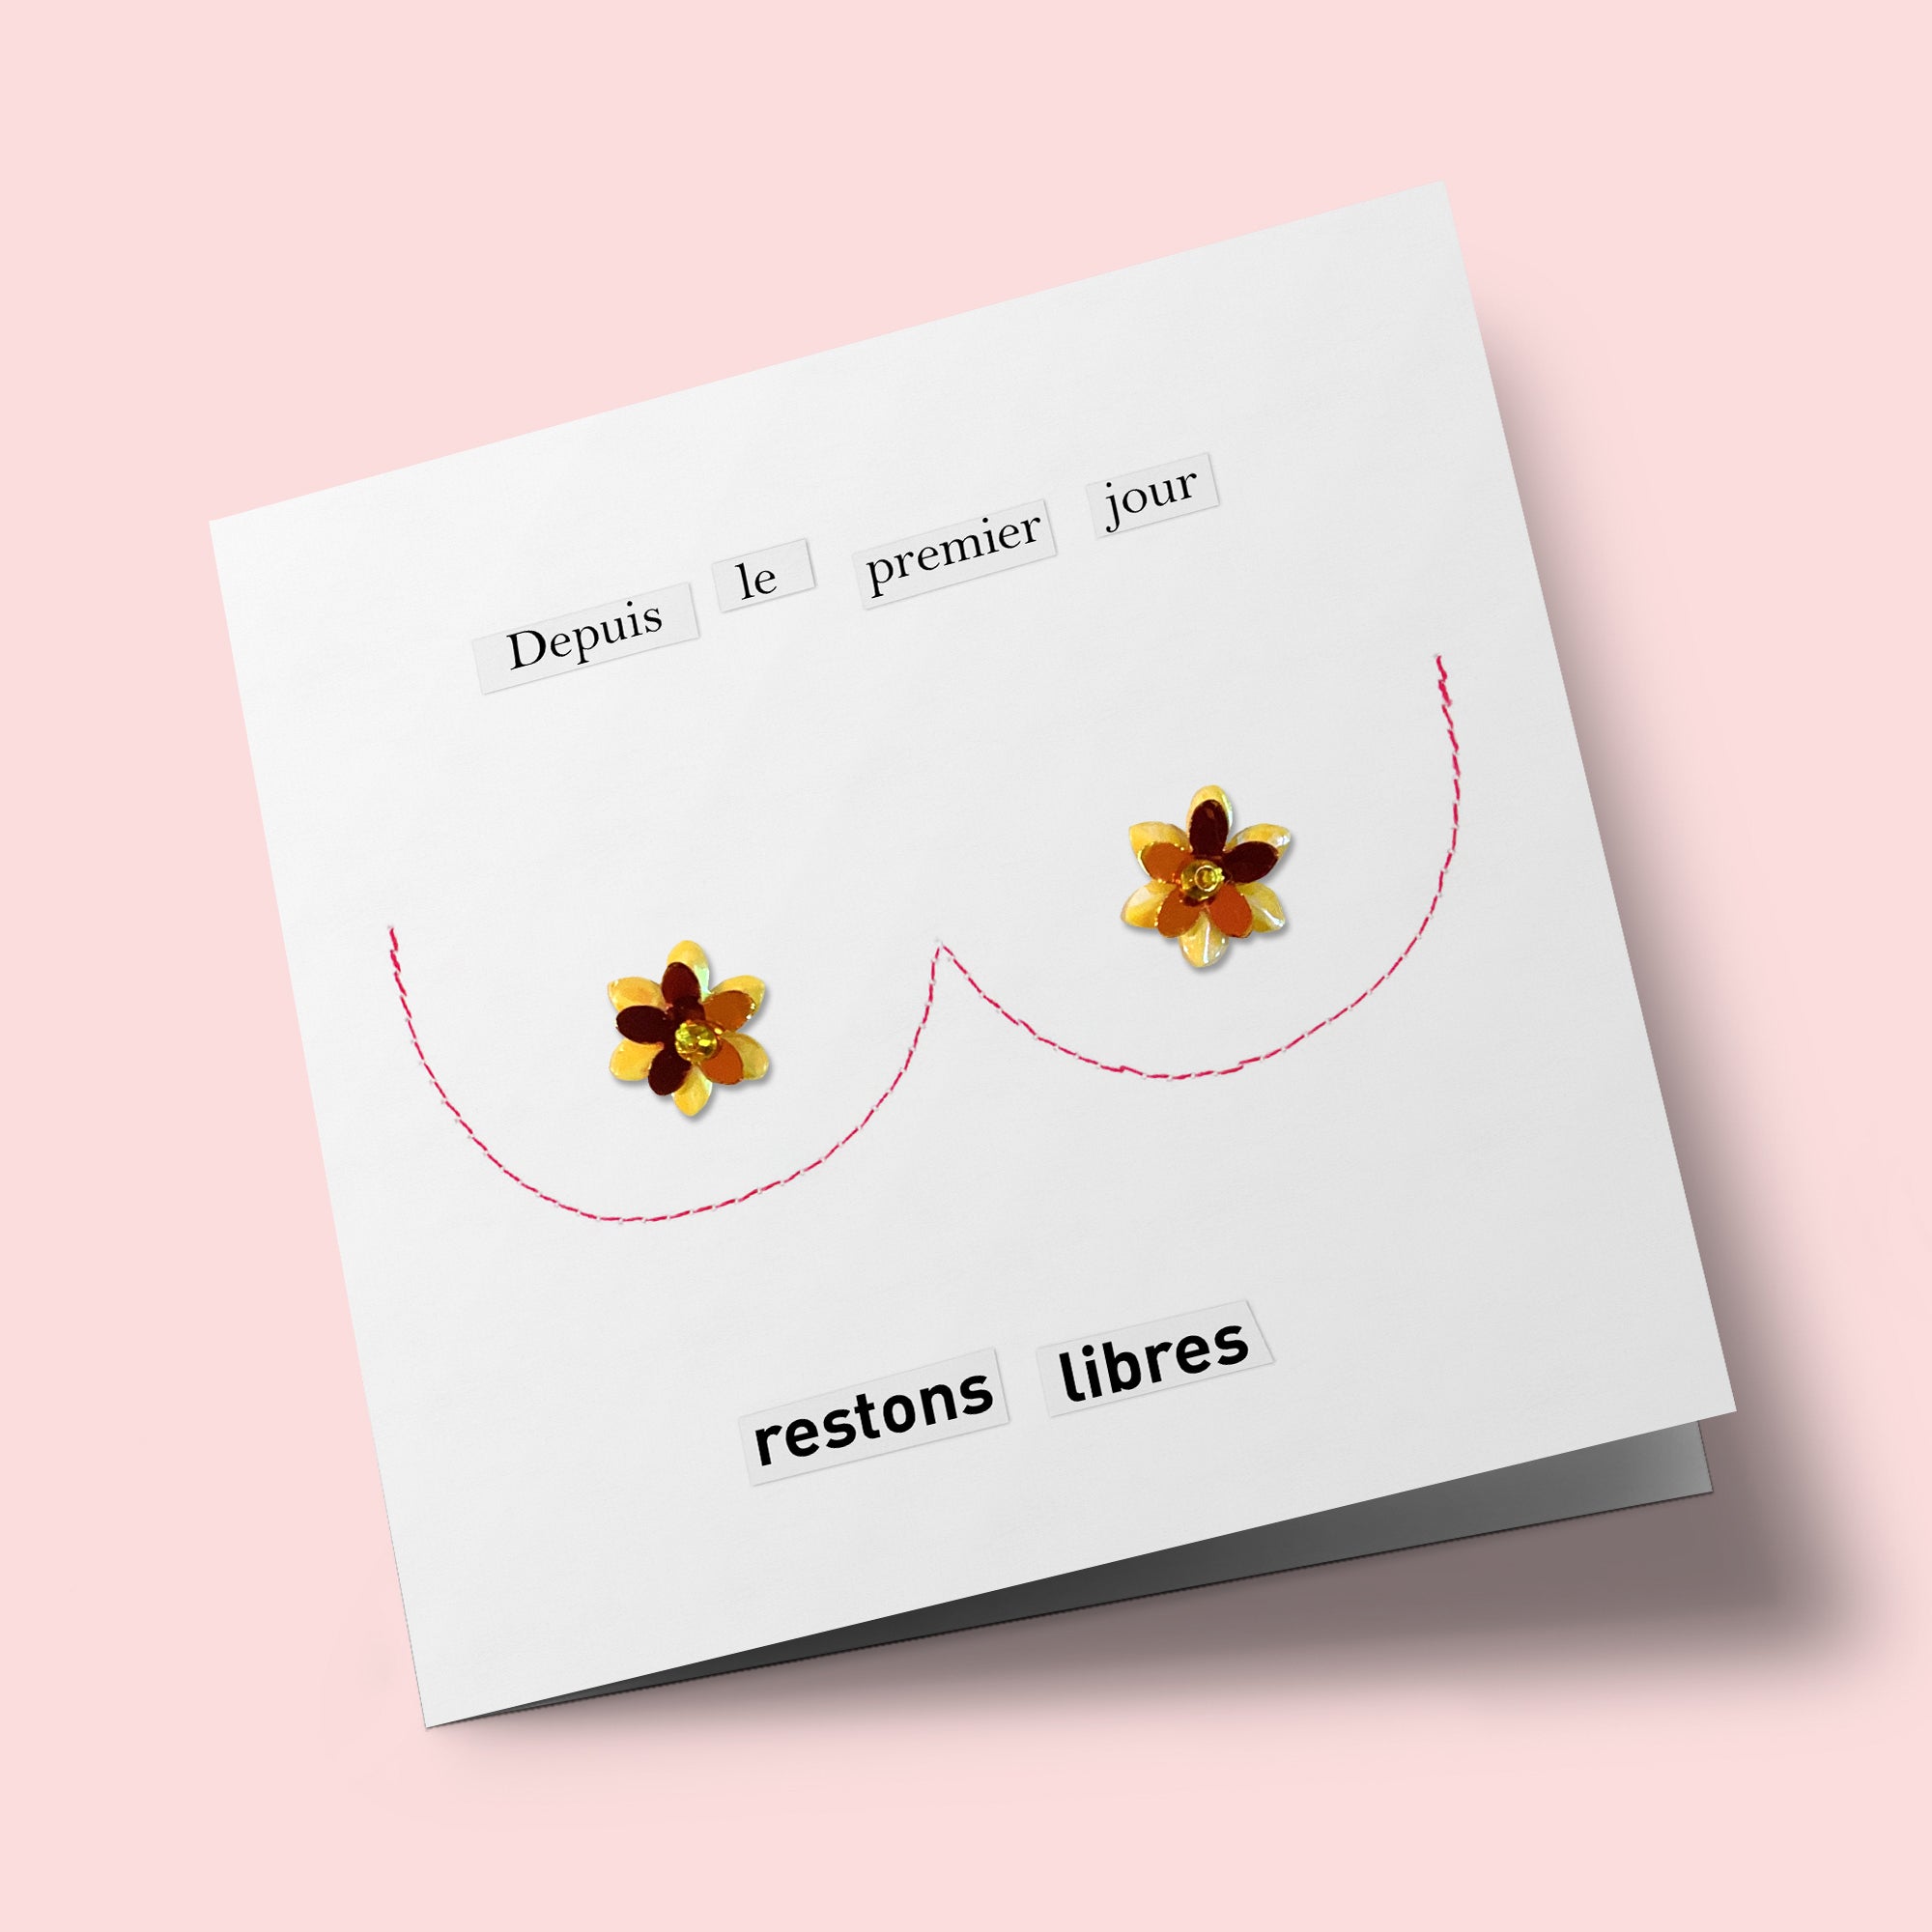 Boutons de roses - "Restons libres" - carte cousue